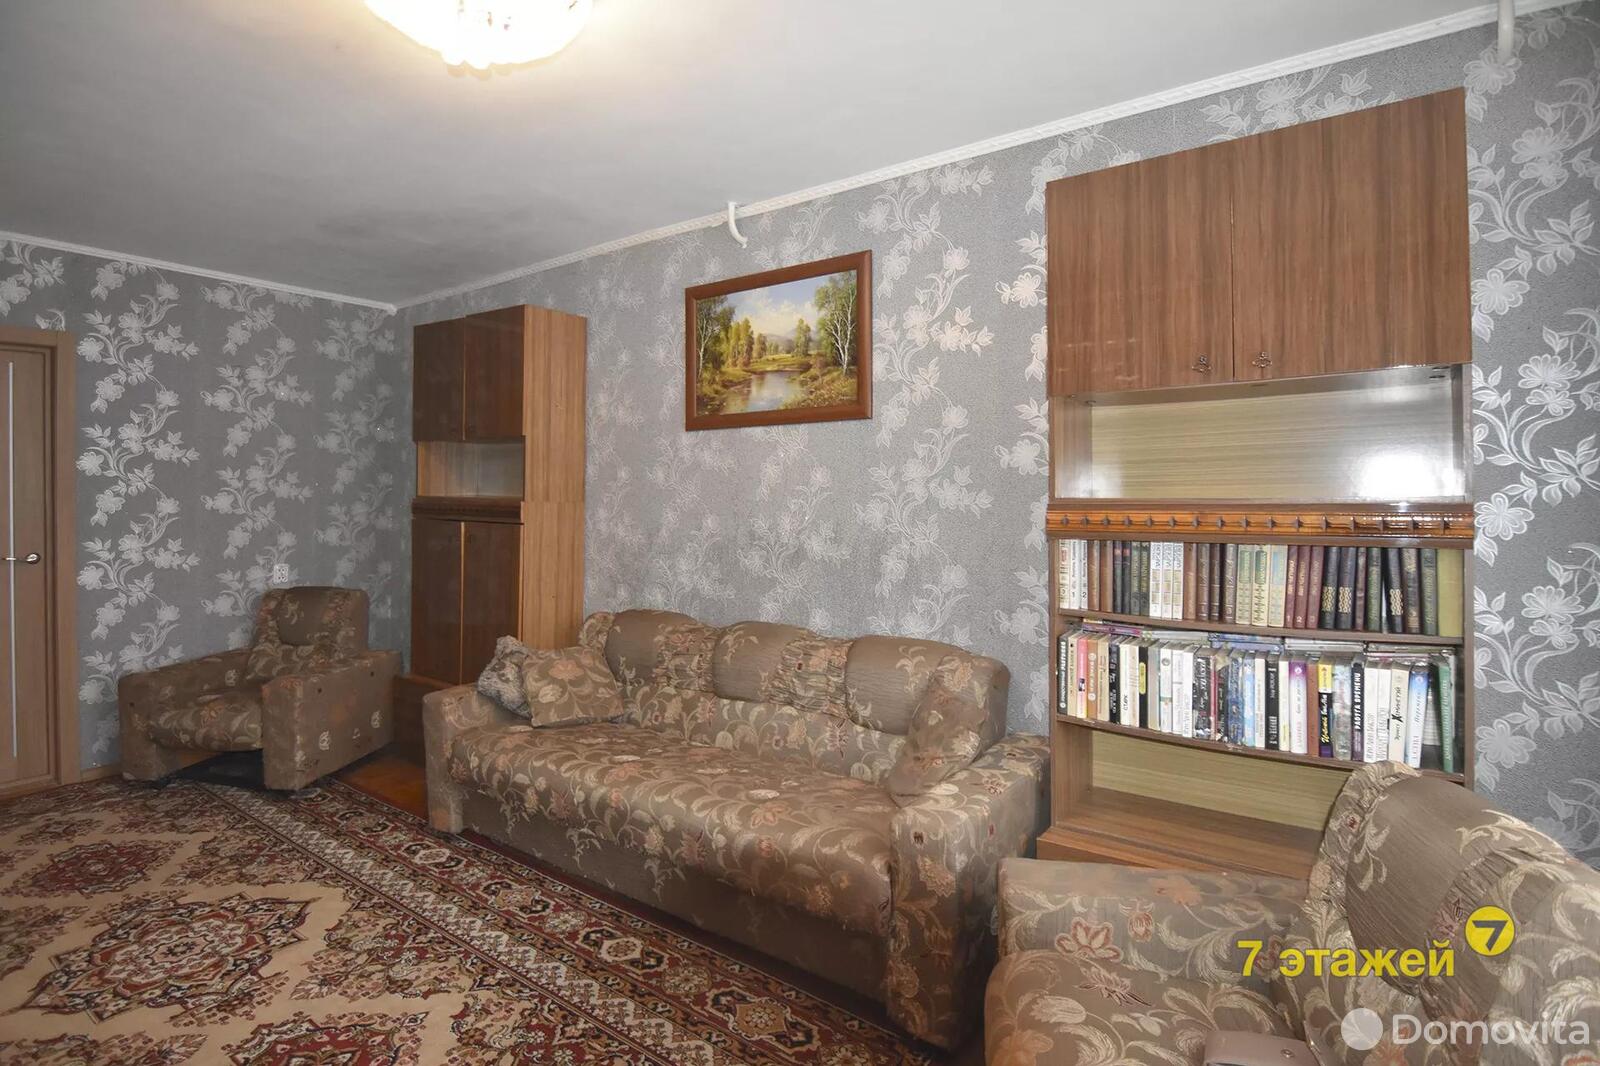 Цена продажи квартиры, Борисов, ул. Чаловской, д. 35